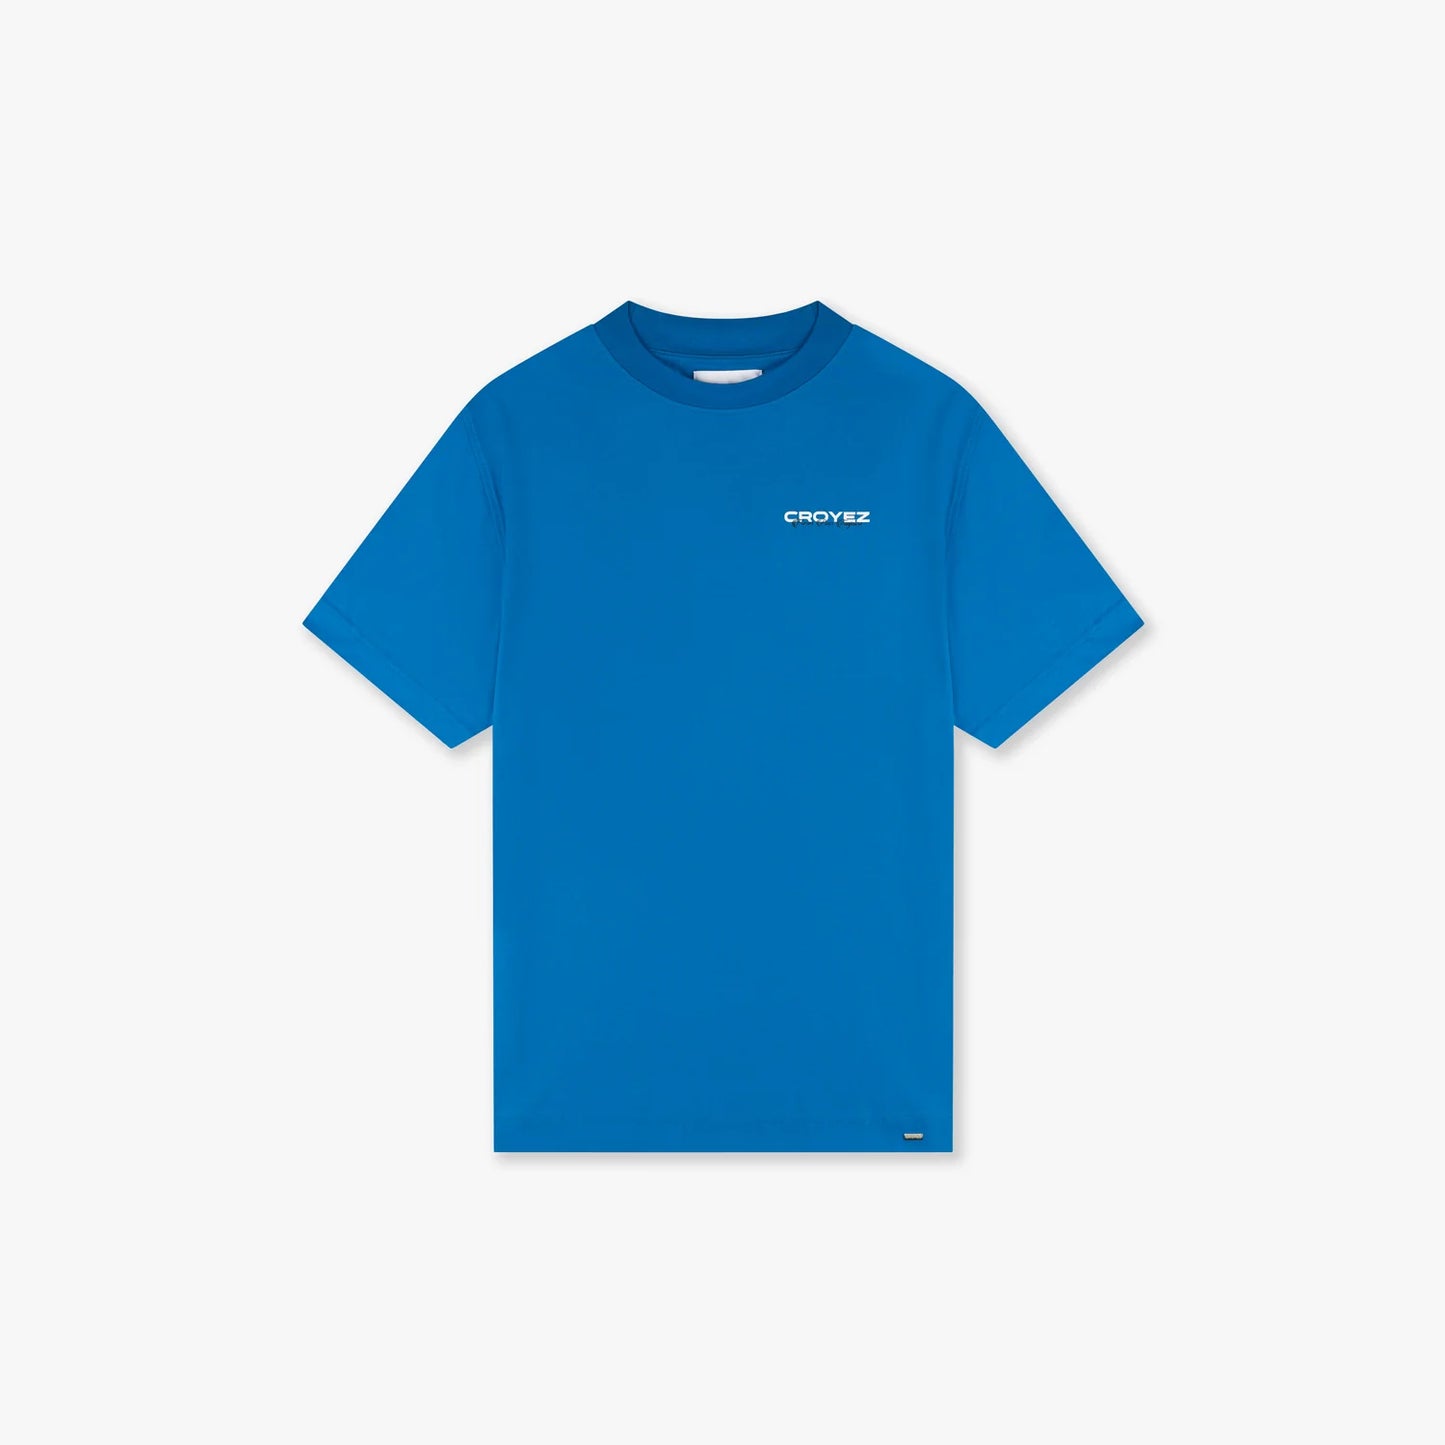 Croyez fraternité t-shirt - Royal blue